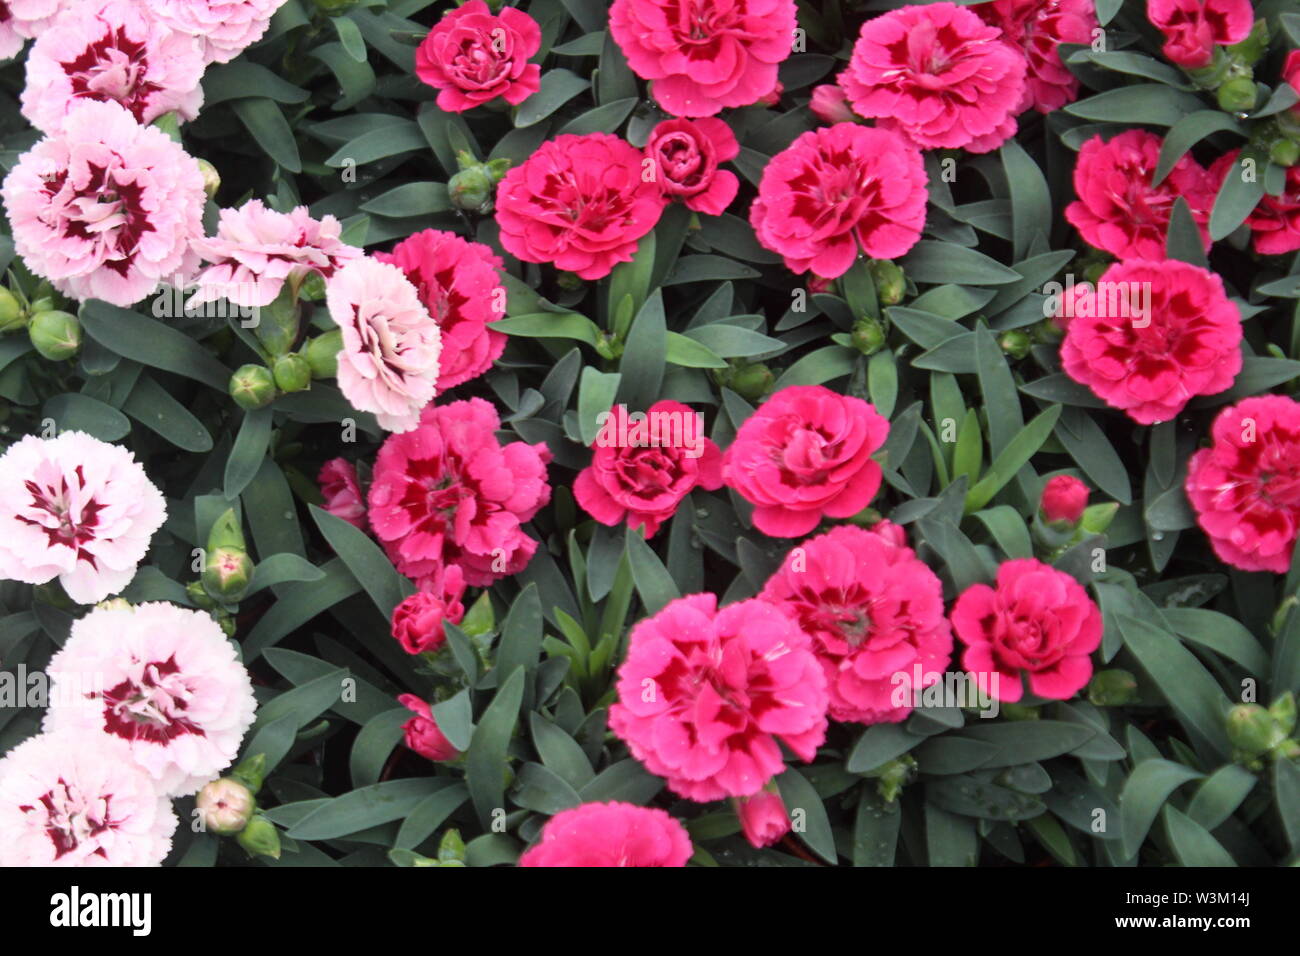 Image de l'Europe centrale, pleine de fleurs roses et des feuilles dans les plantes en pots dans un centre de jardinage Banque D'Images